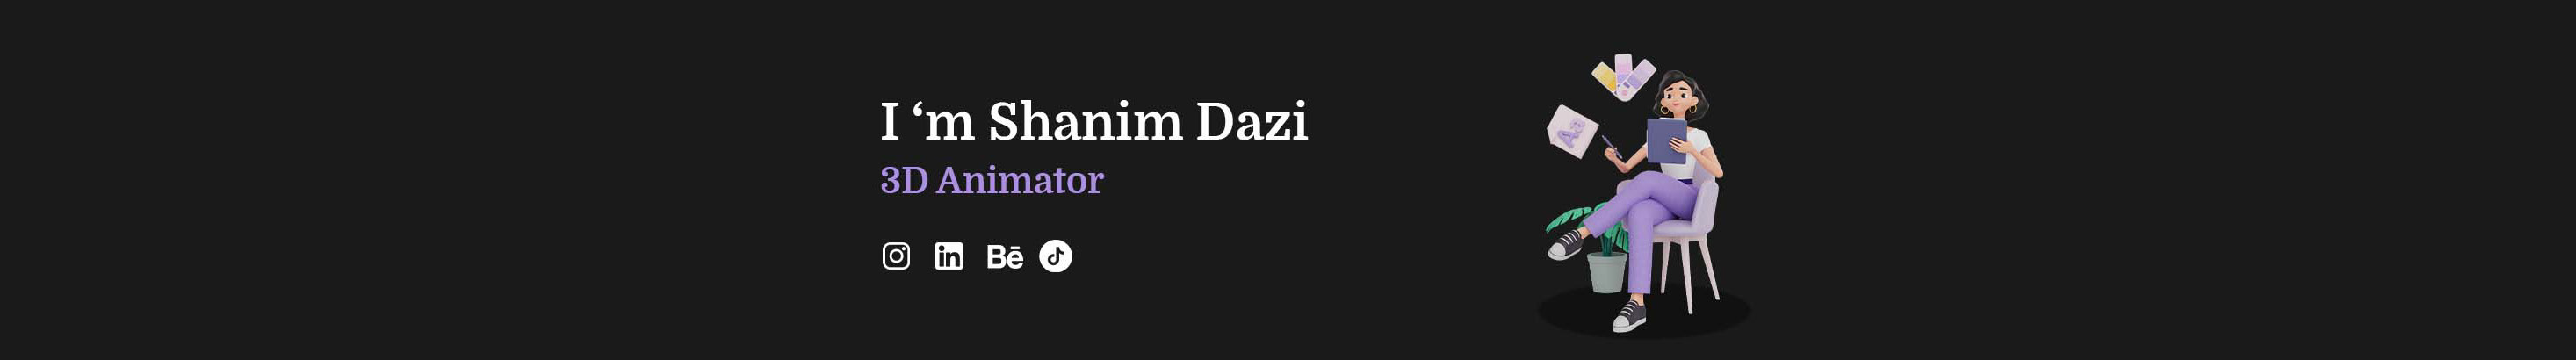 Shanim Dazi profil başlığı